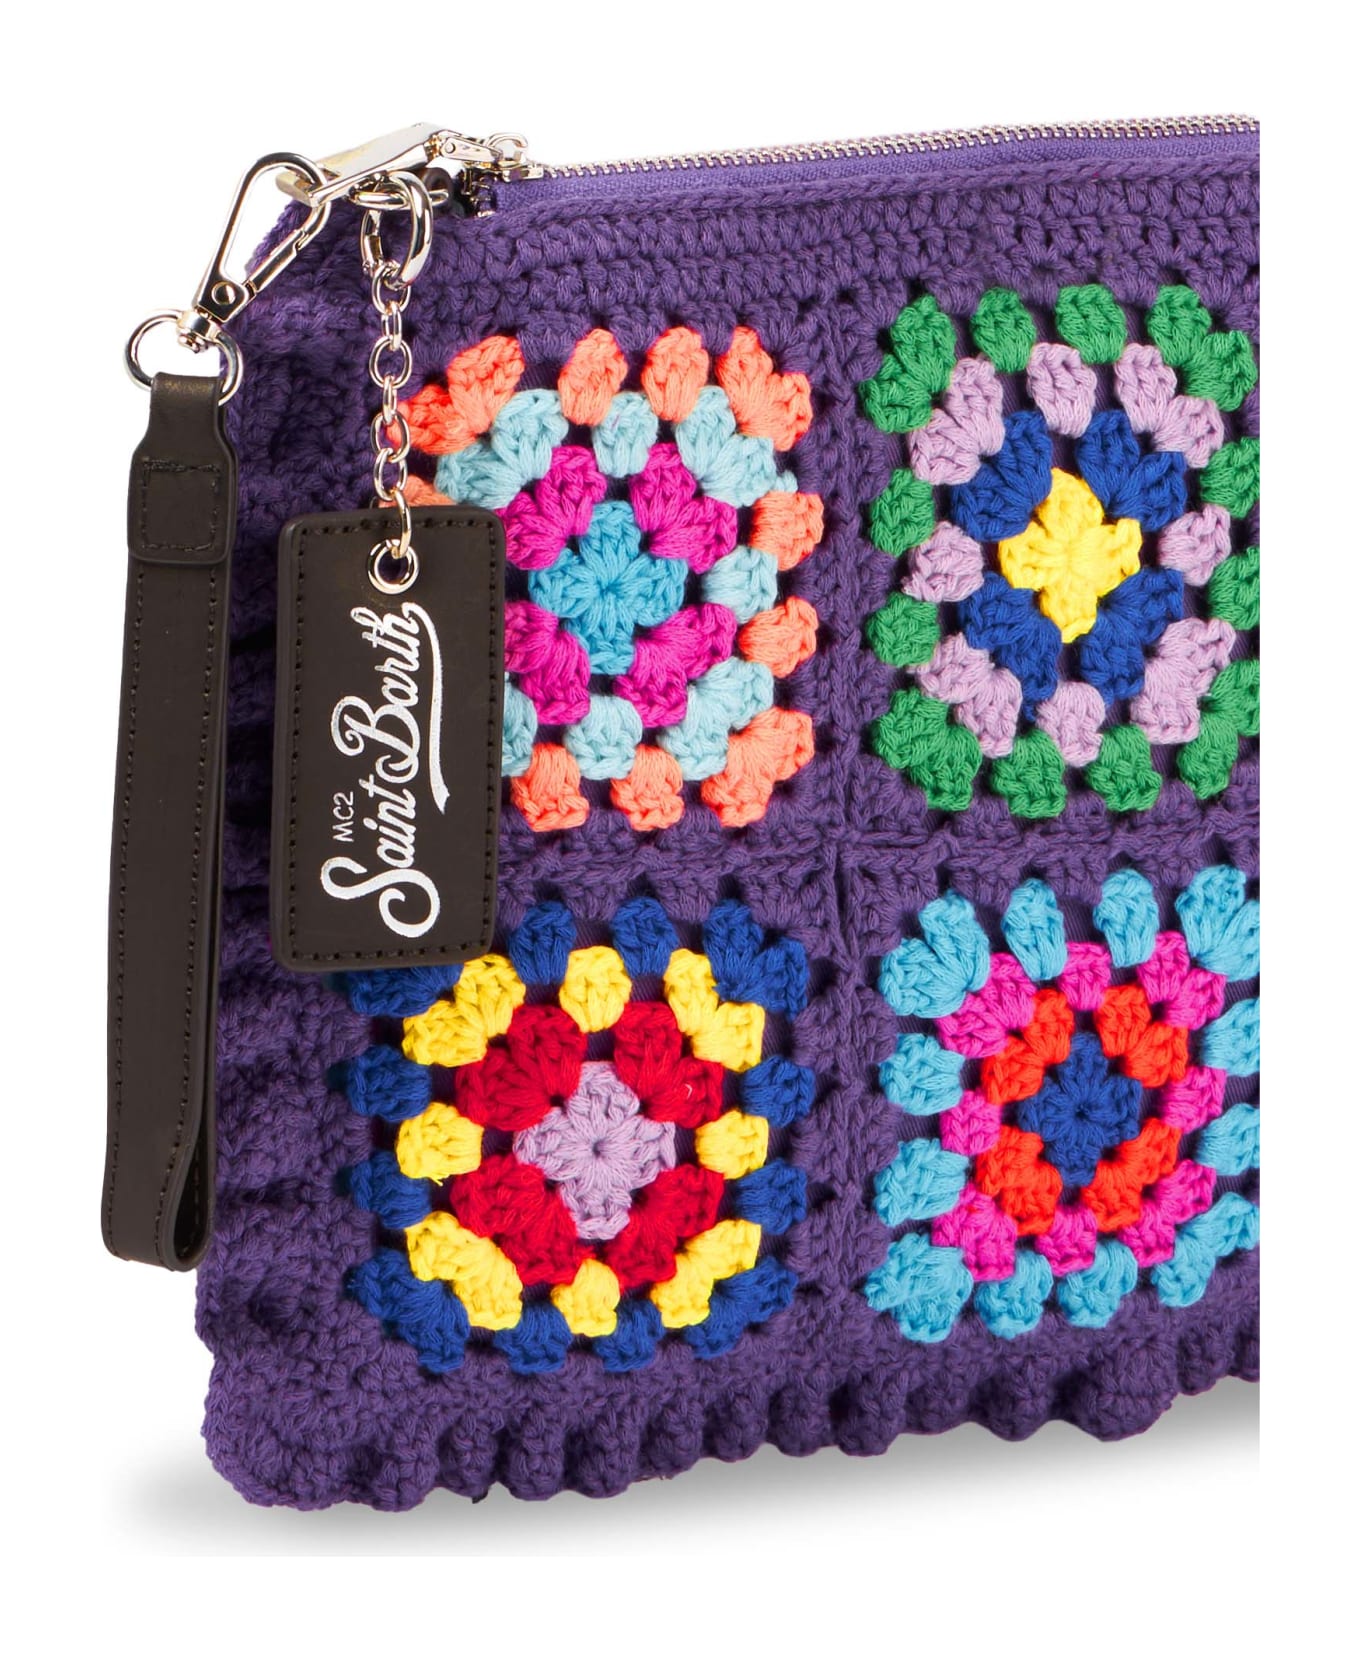 MC2 Saint Barth Parisienne Violet Crochet Crossbody Pouch Bag - PINK